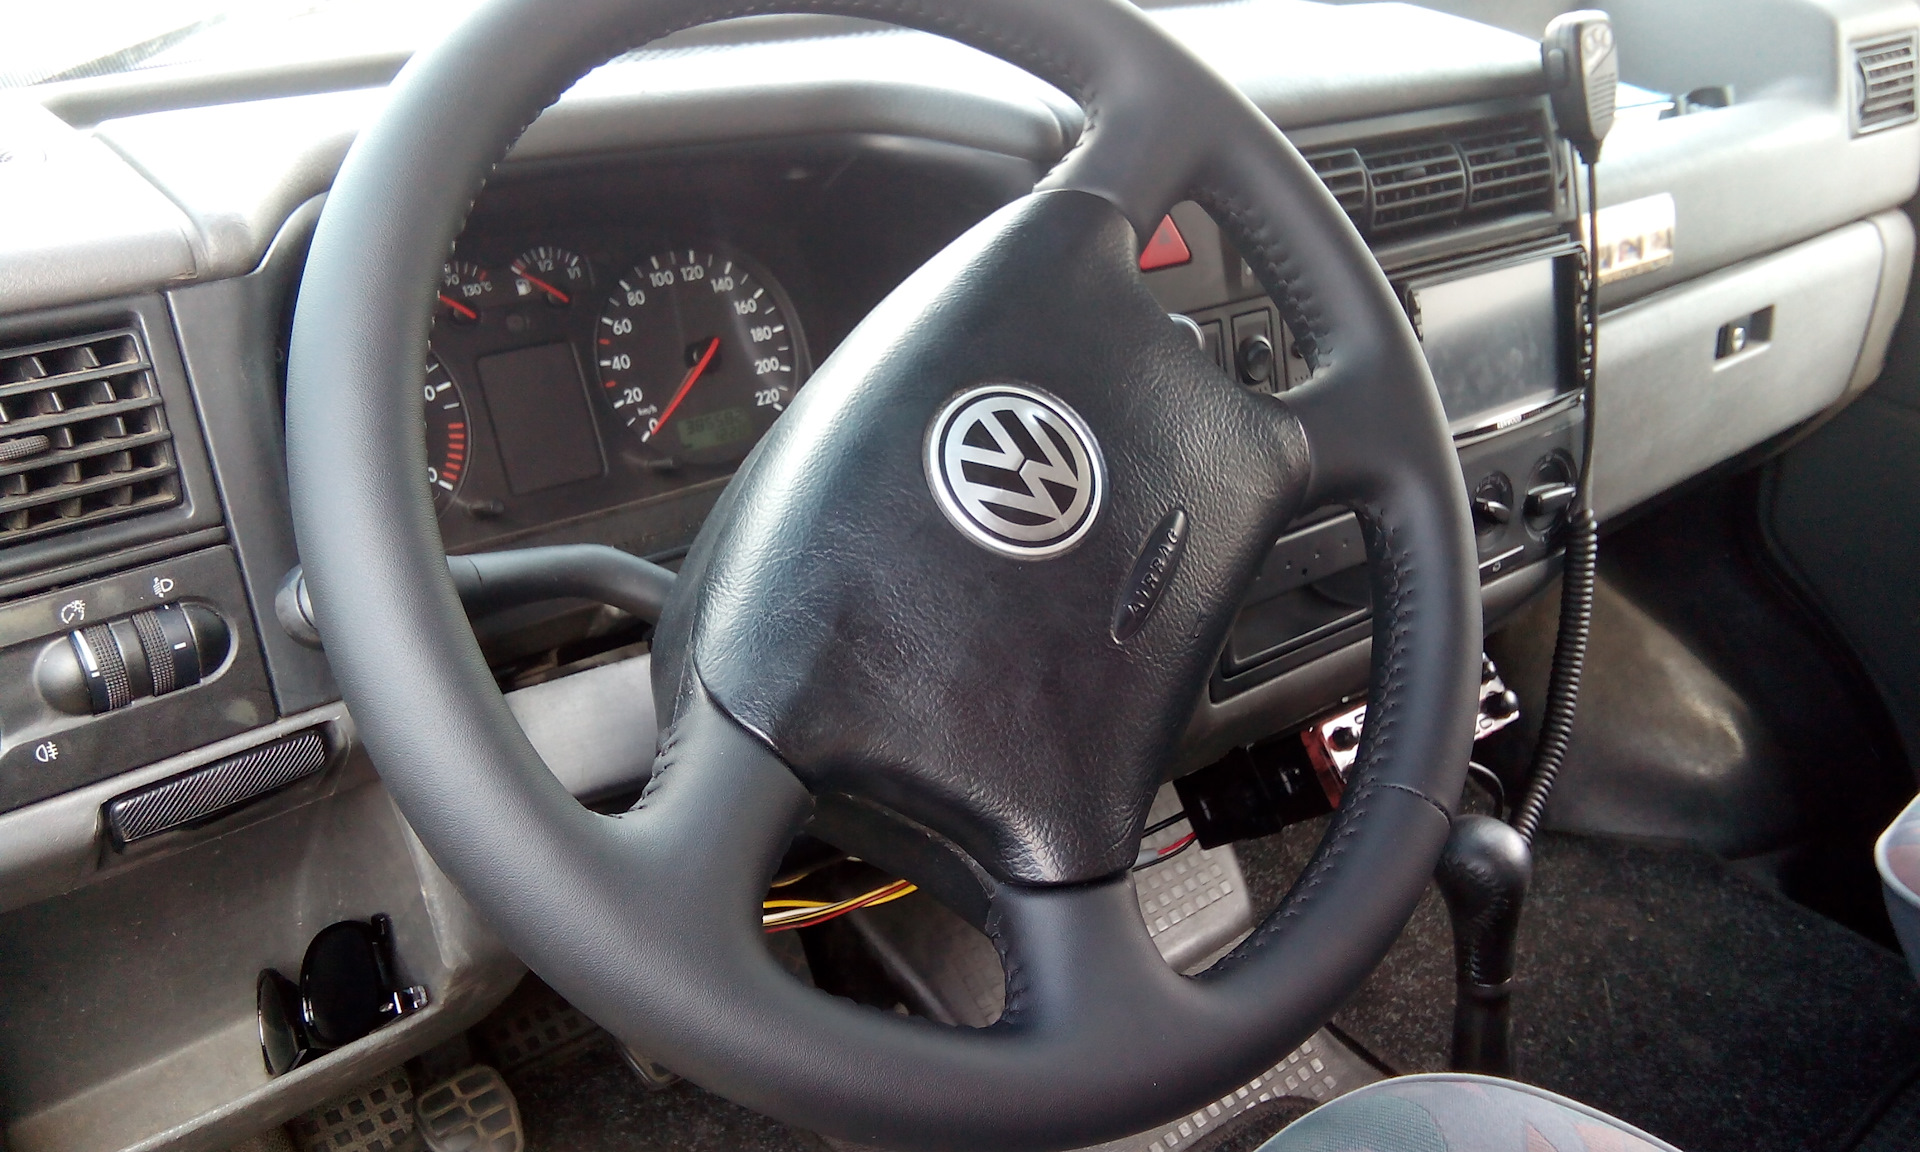 Руль фольксваген т4. Руль Транспортер т4. Руль Фольксваген Транспортер т4. Руль VW Transporter t4 1991-1996 руль.